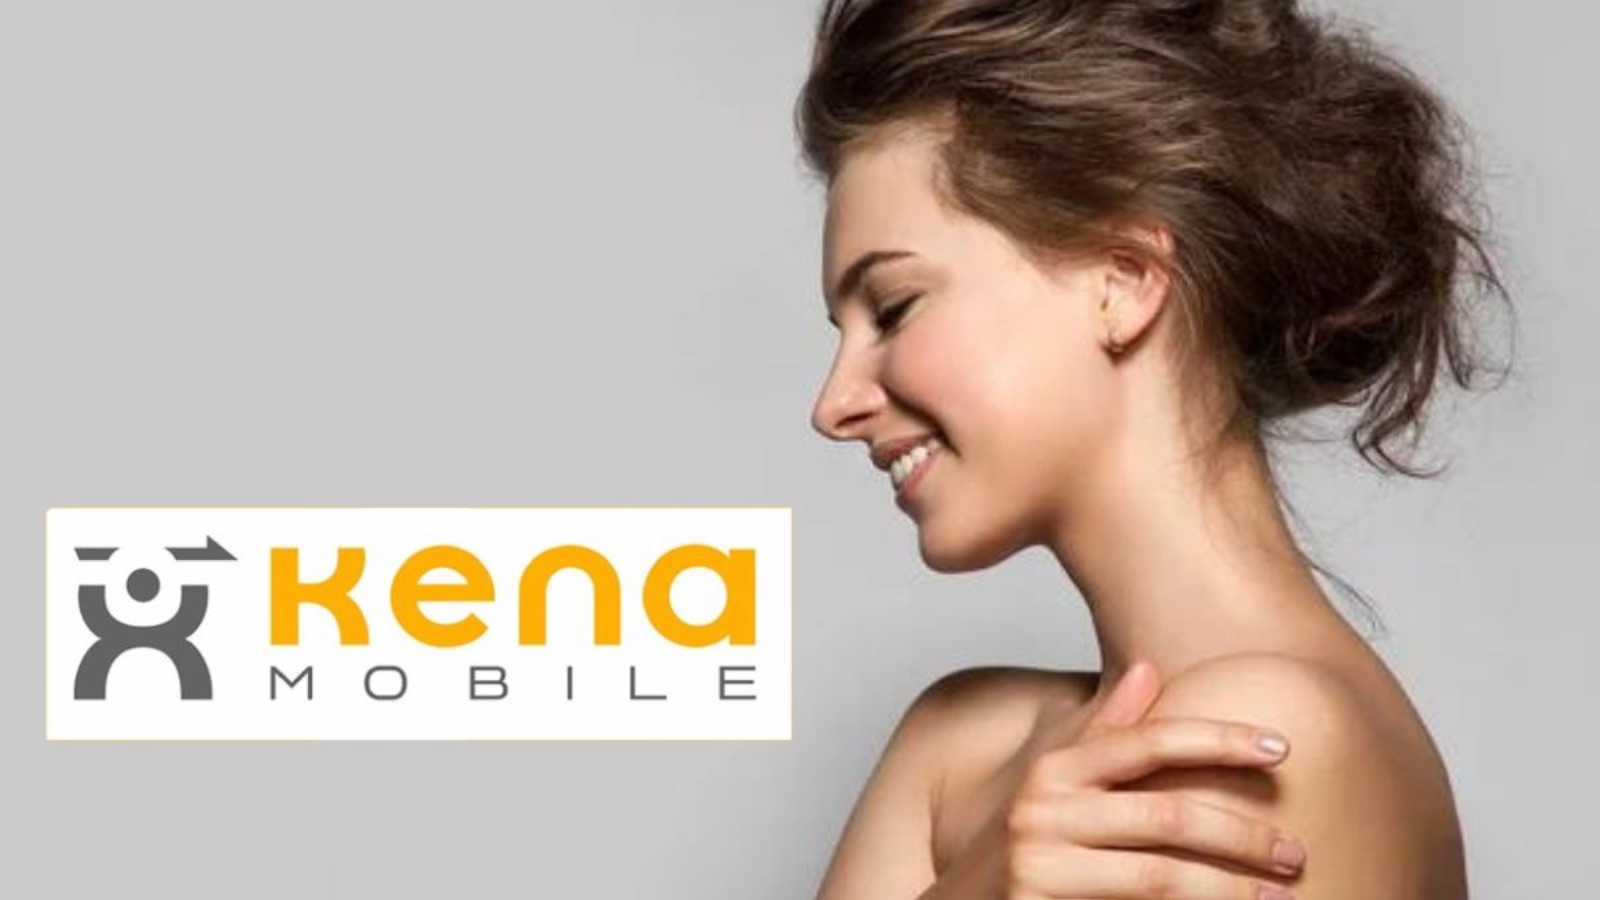 Kena Mobile, l'offerta migliore costa 5 € al mese con tutto INCLUSO 